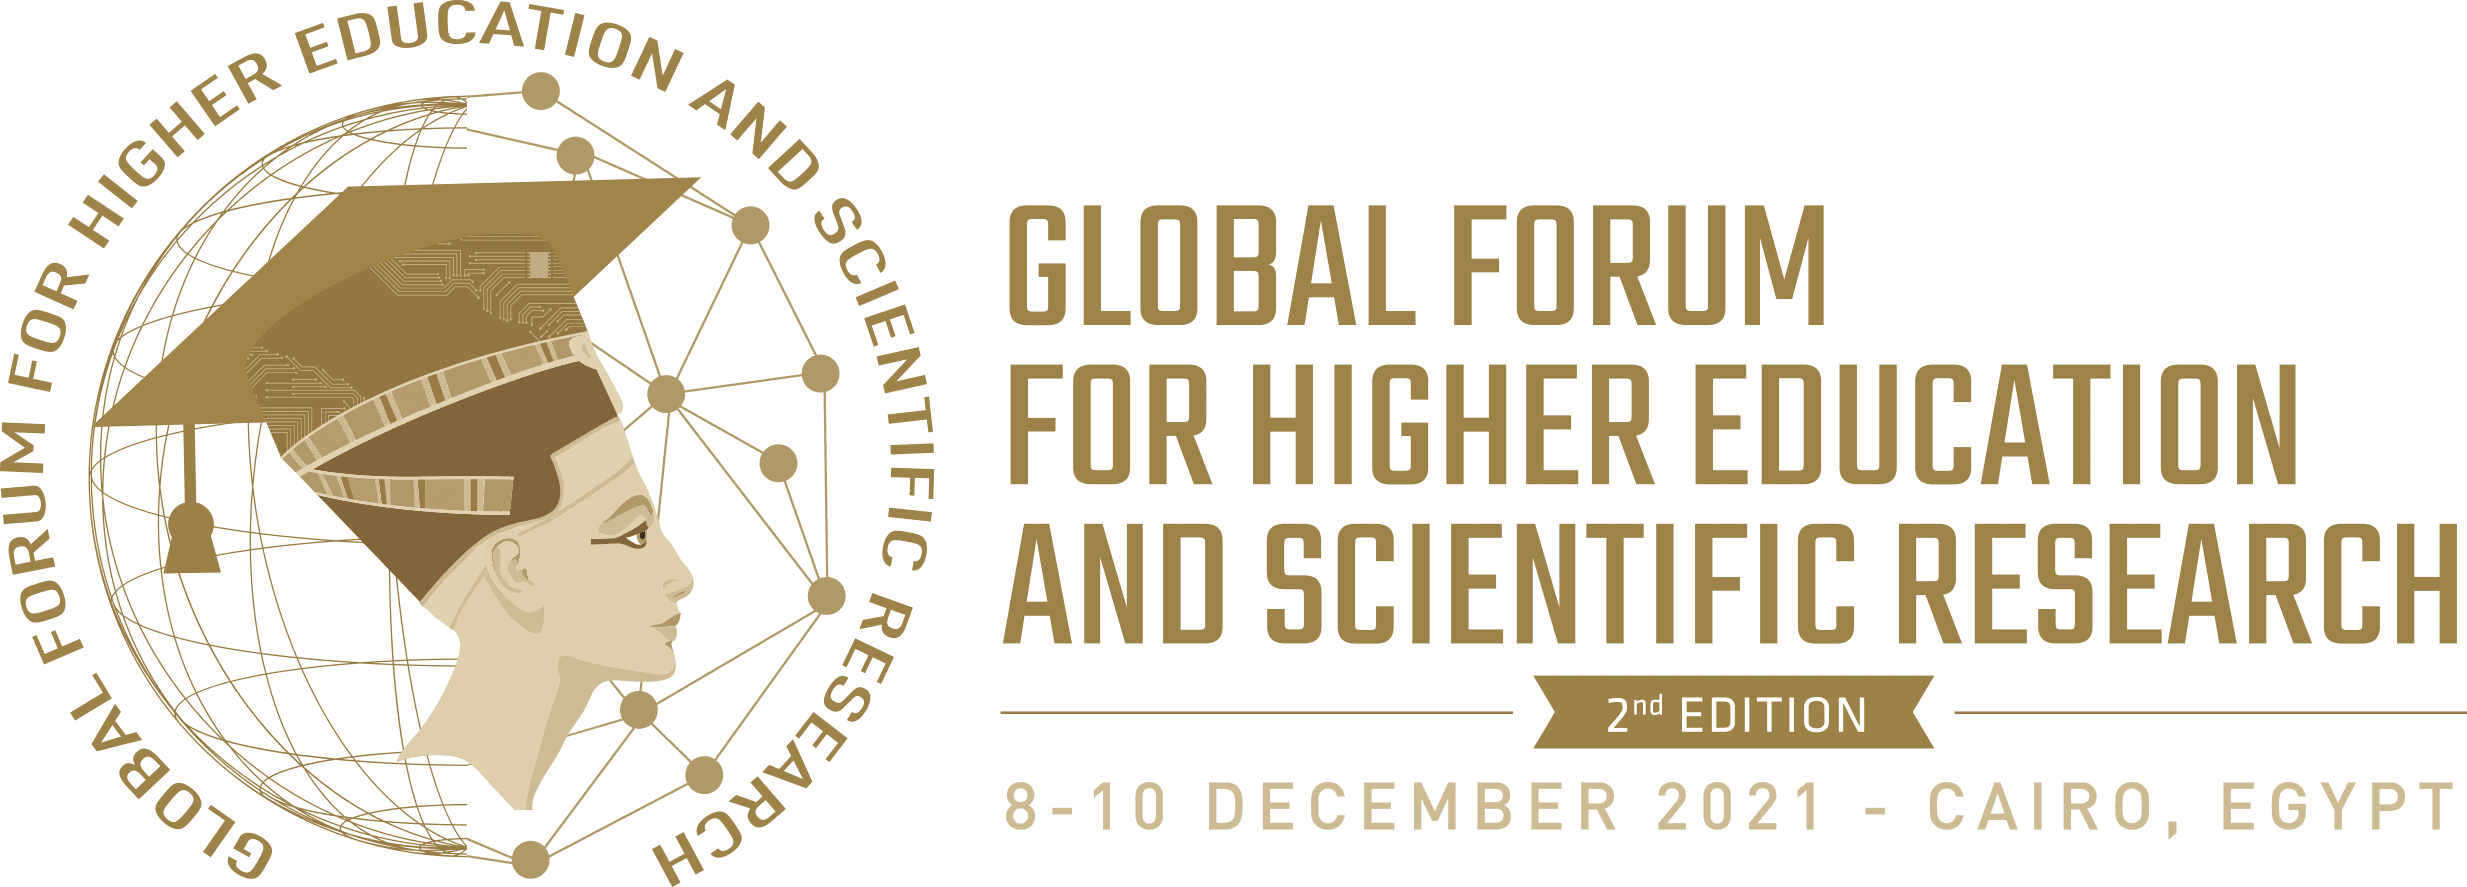 المُنتدى العالمي للتعليم العالي والبحث العلمي (GFHS)